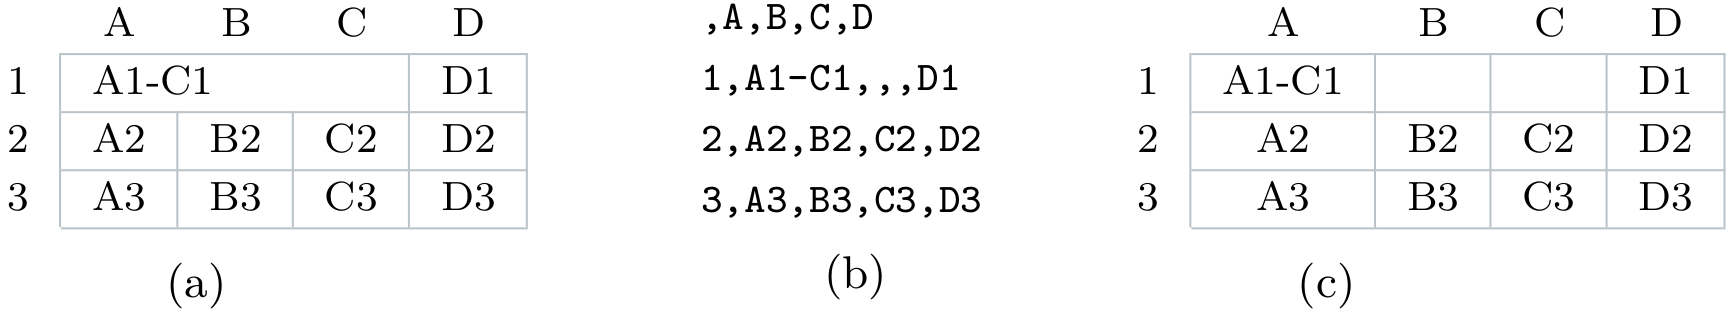 (a) Eine Tabelle mit verbundenen Zellen in einem Tabellenkalkulationsprogramm. (b) Die Tabelle aus a im CSV-Format. Der Wert aus den verbundenen Zellen steht in der ersten der vorher verbundenen Zellen. (c) Wird die CSV-Tabelle aus b wieder in einem Tabellenkalkulationsprogramm geöffnet, werden die Zellen auch nicht mehr als verbunden angezeigt.